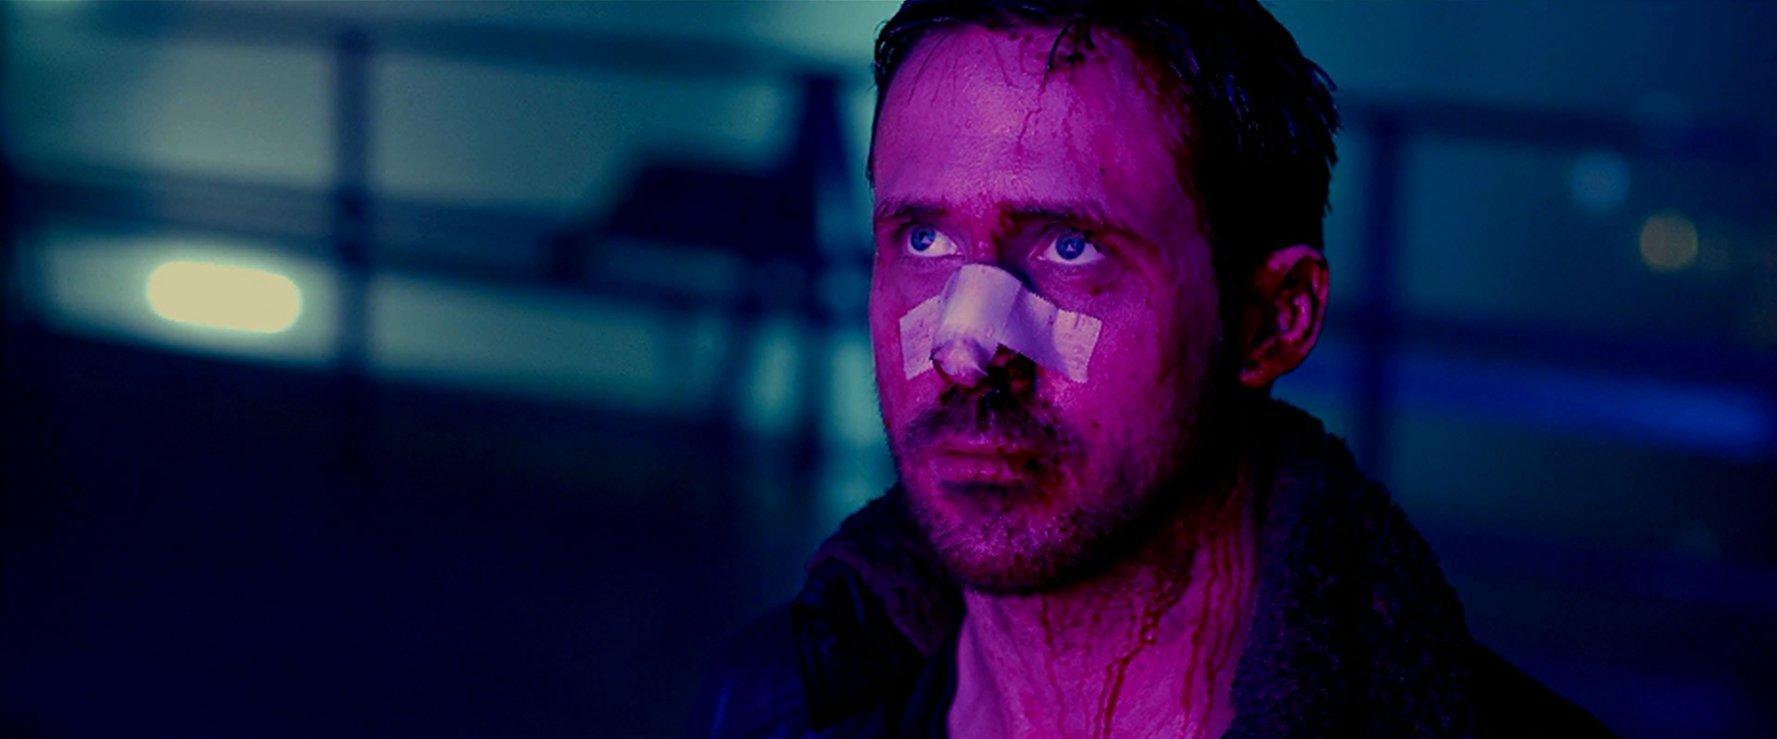 Ryan Gosling In Blade Runner 2049 Movie Wallpapers